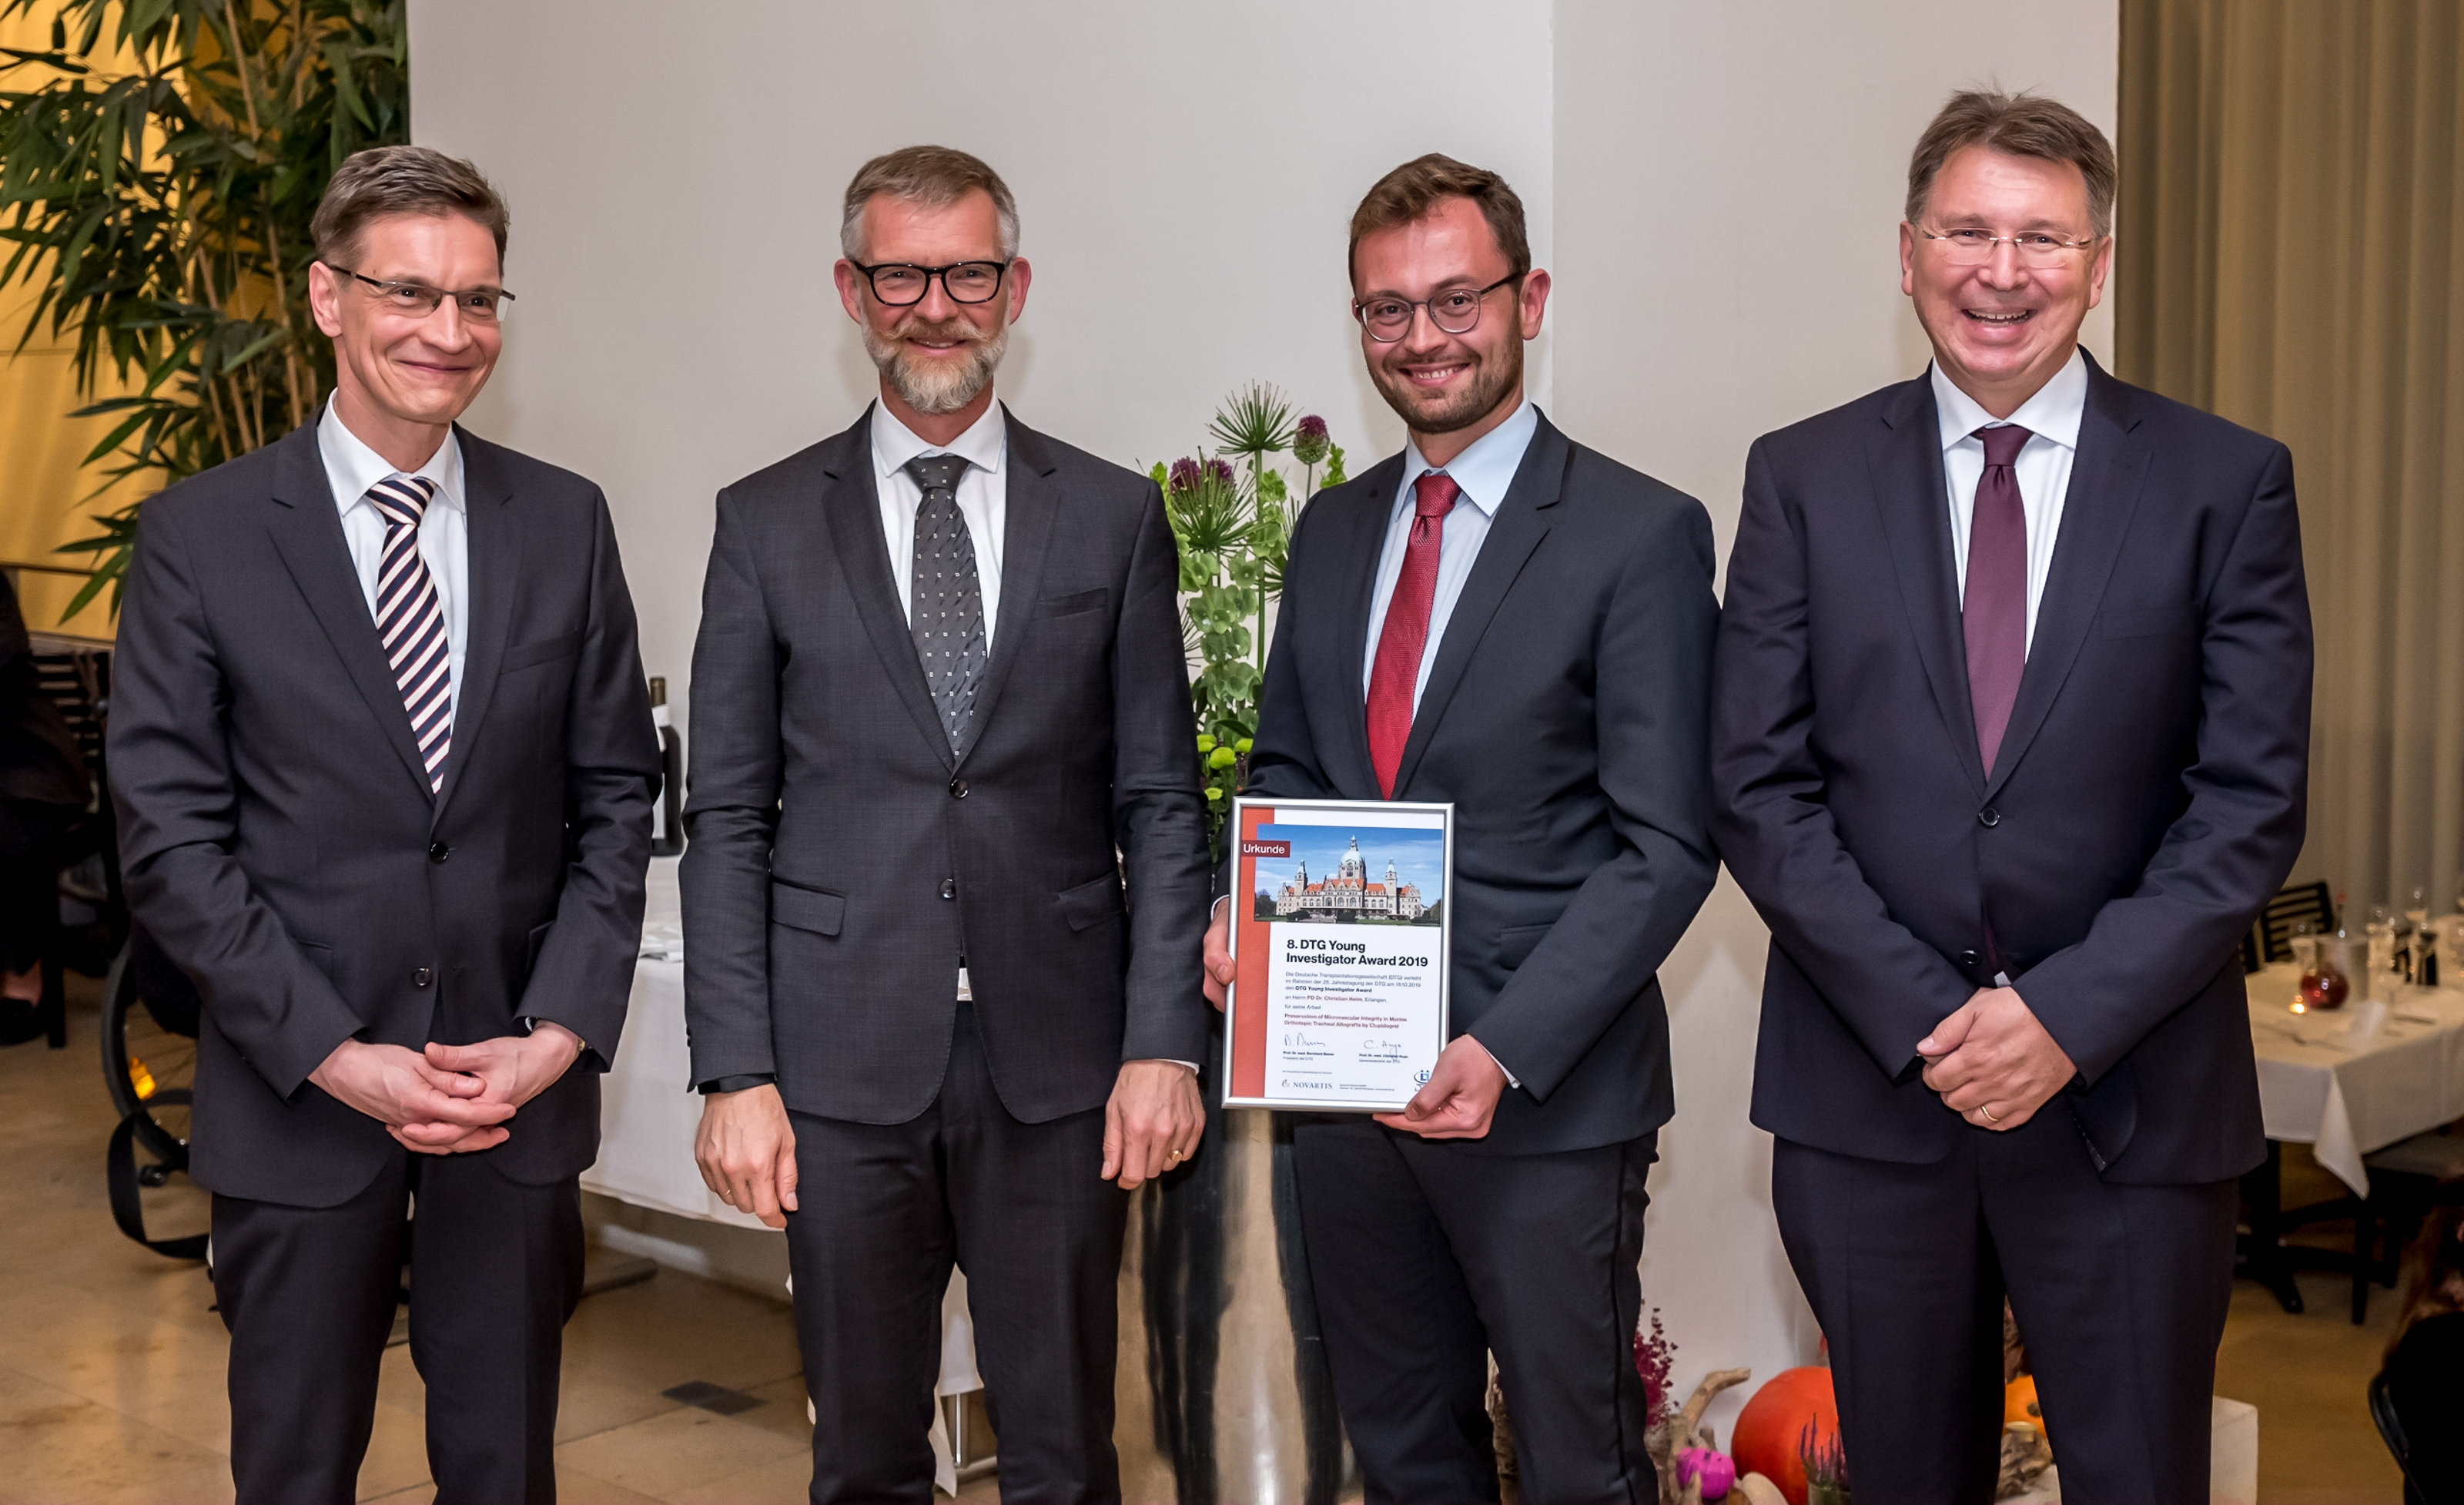 Preisverleihung 2019 von links: Prof. Strassburg, Dr. Schöneck (Novartis), Dr. Heim, Prof. Banas